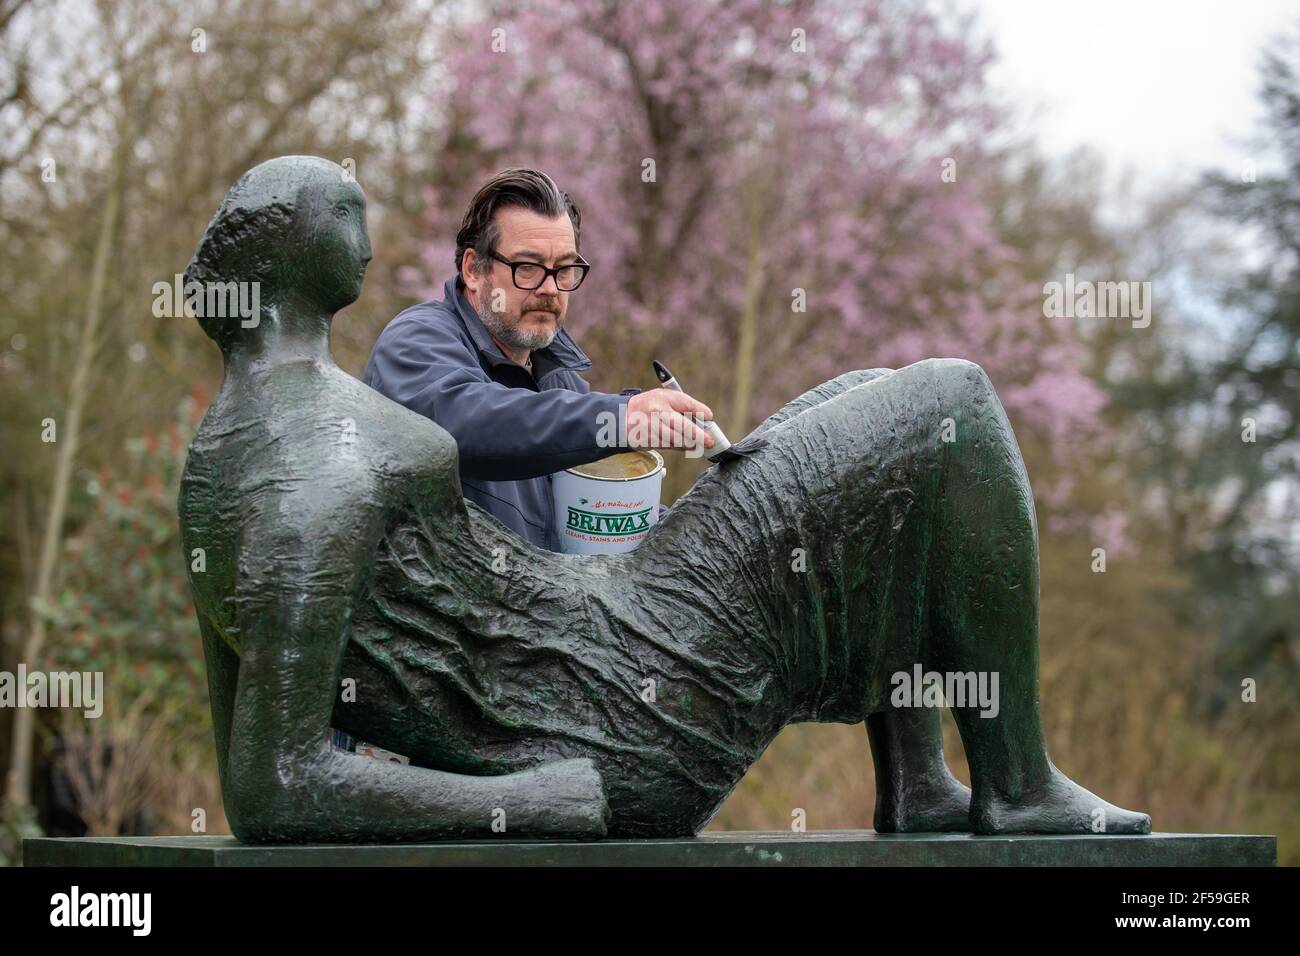 Il conservatore di sculture James Copper cere la scultura in bronzo 'Raped Reclining Figure' durante i preparativi per gli Henry Moore Studios e giardini a Much Hadham, Hertfordshire, per riaprire il 31 marzo dopo che le restrizioni di blocco sono attenuate. Data immagine: Giovedì 25 marzo 2021. Foto Stock